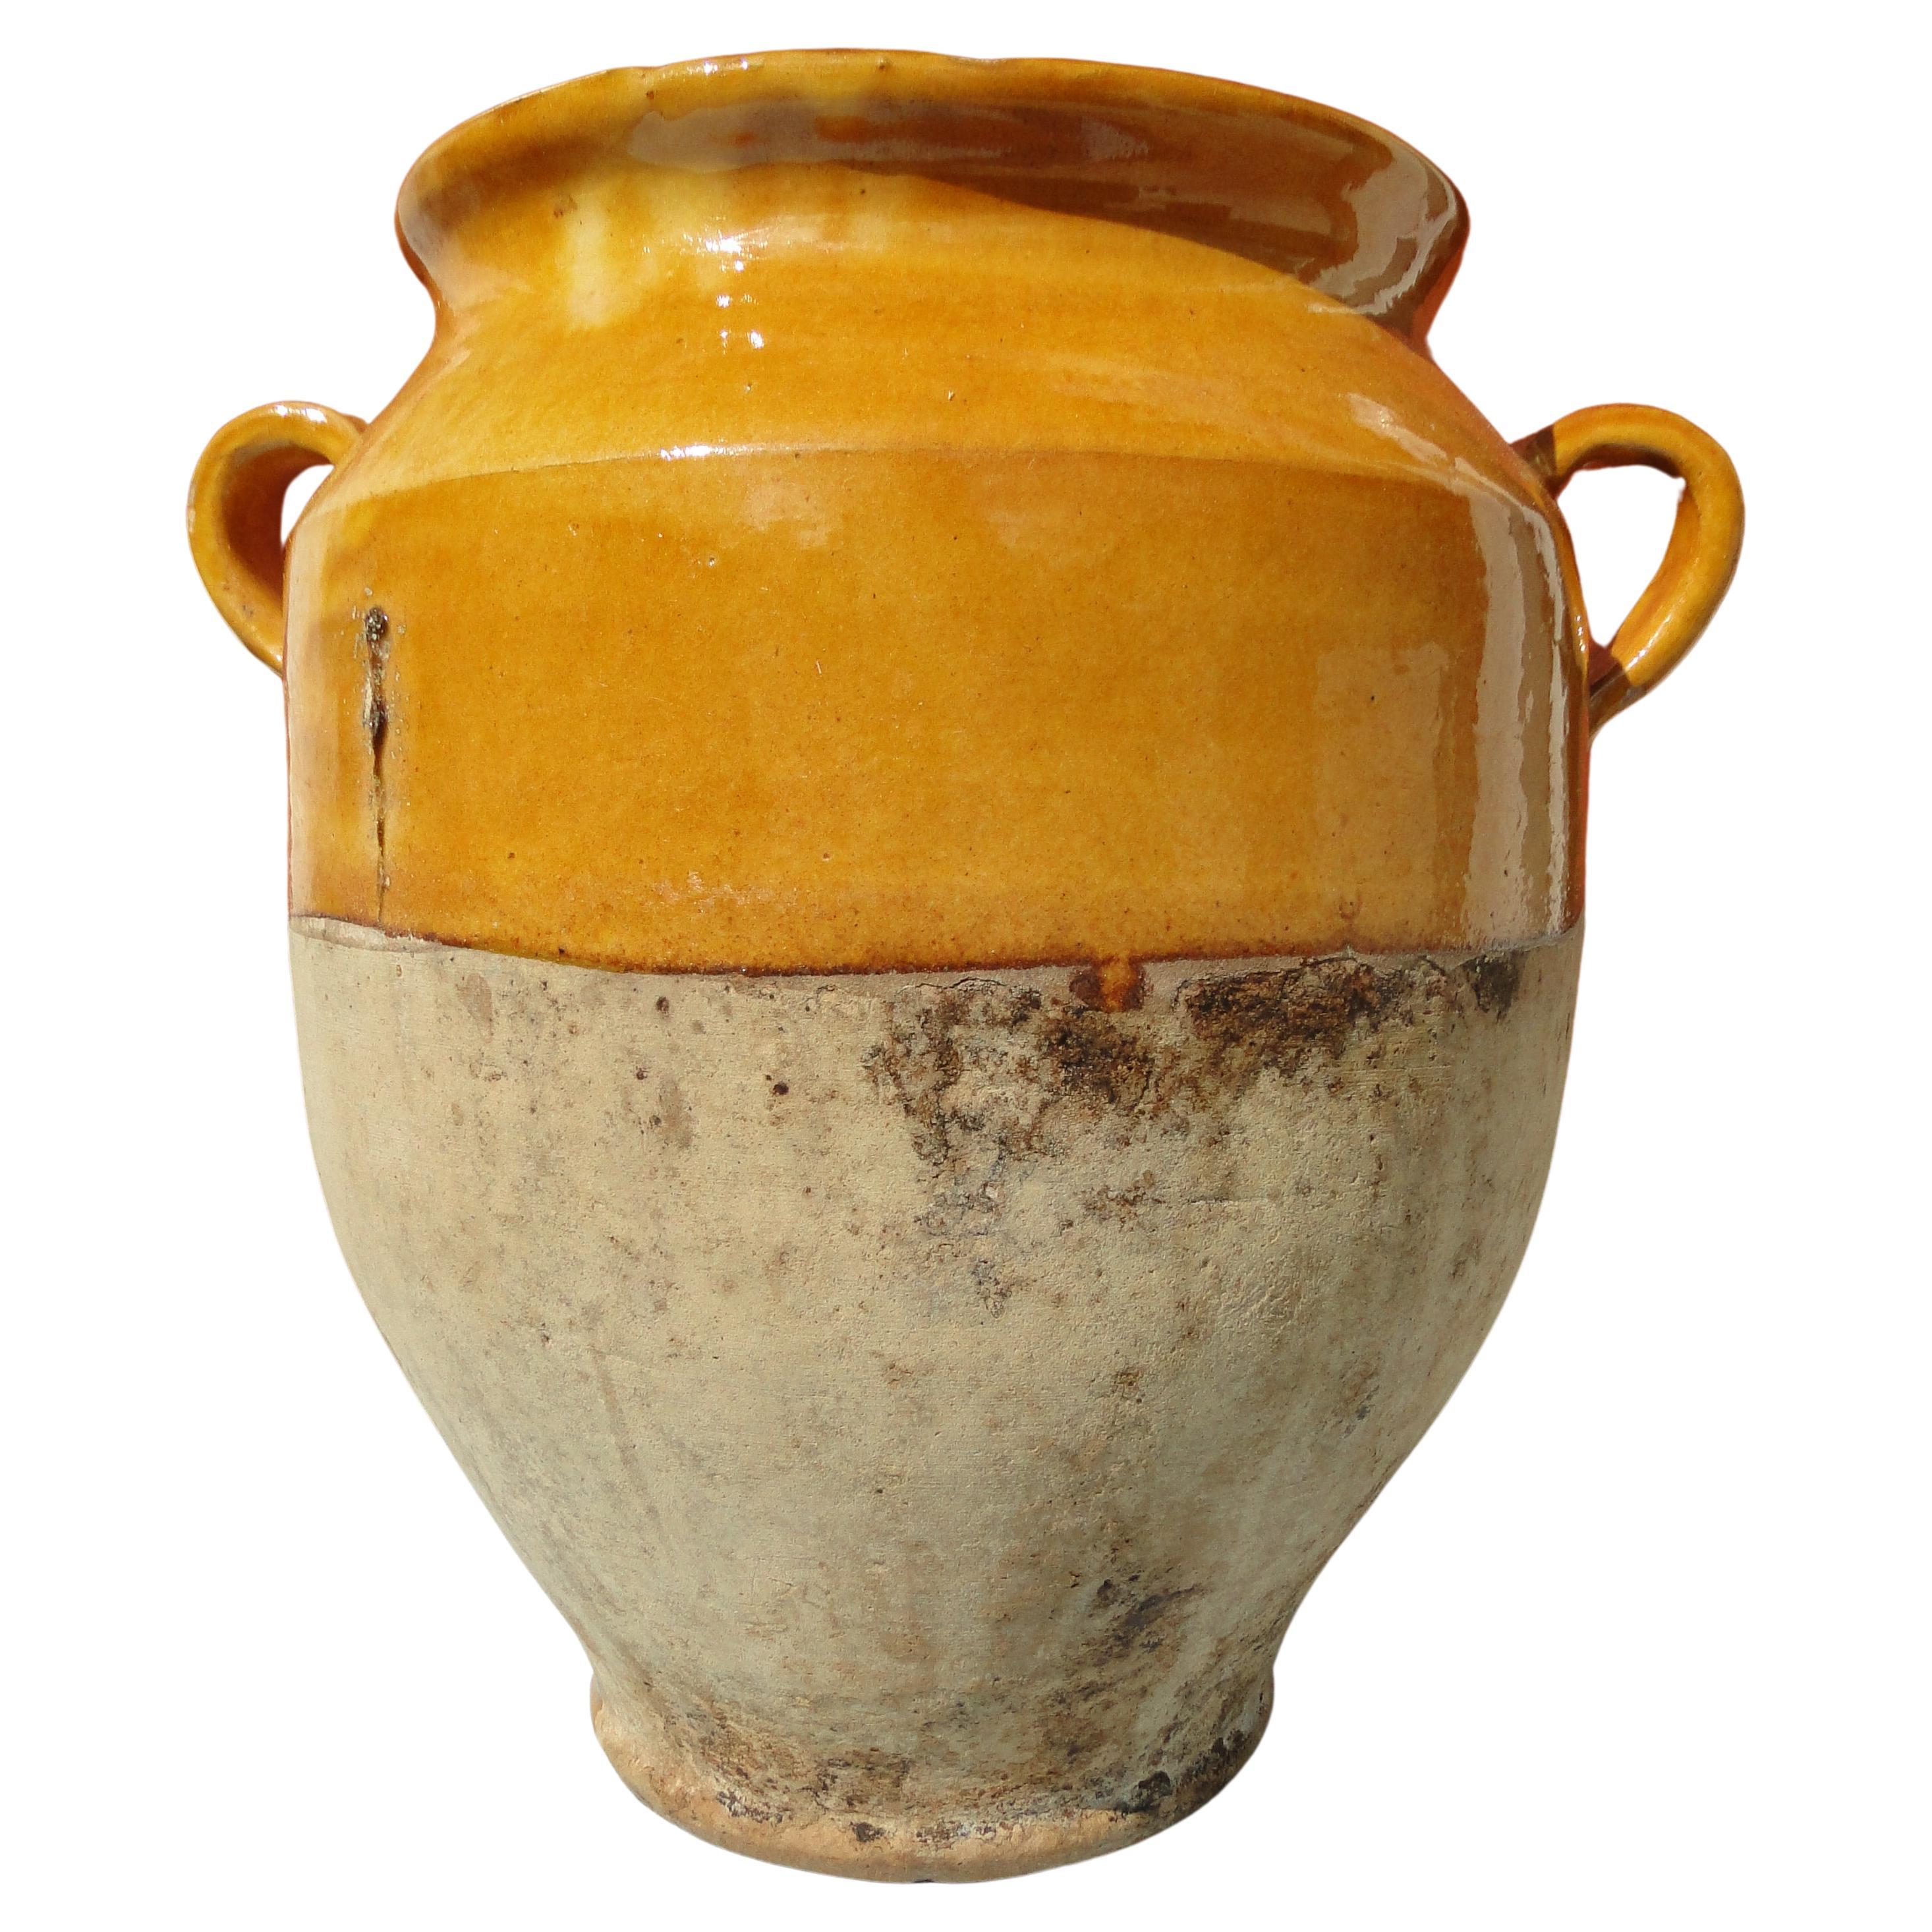  Pot d'art français ancien rouge confit, faïence jaune, poterie jaune, France